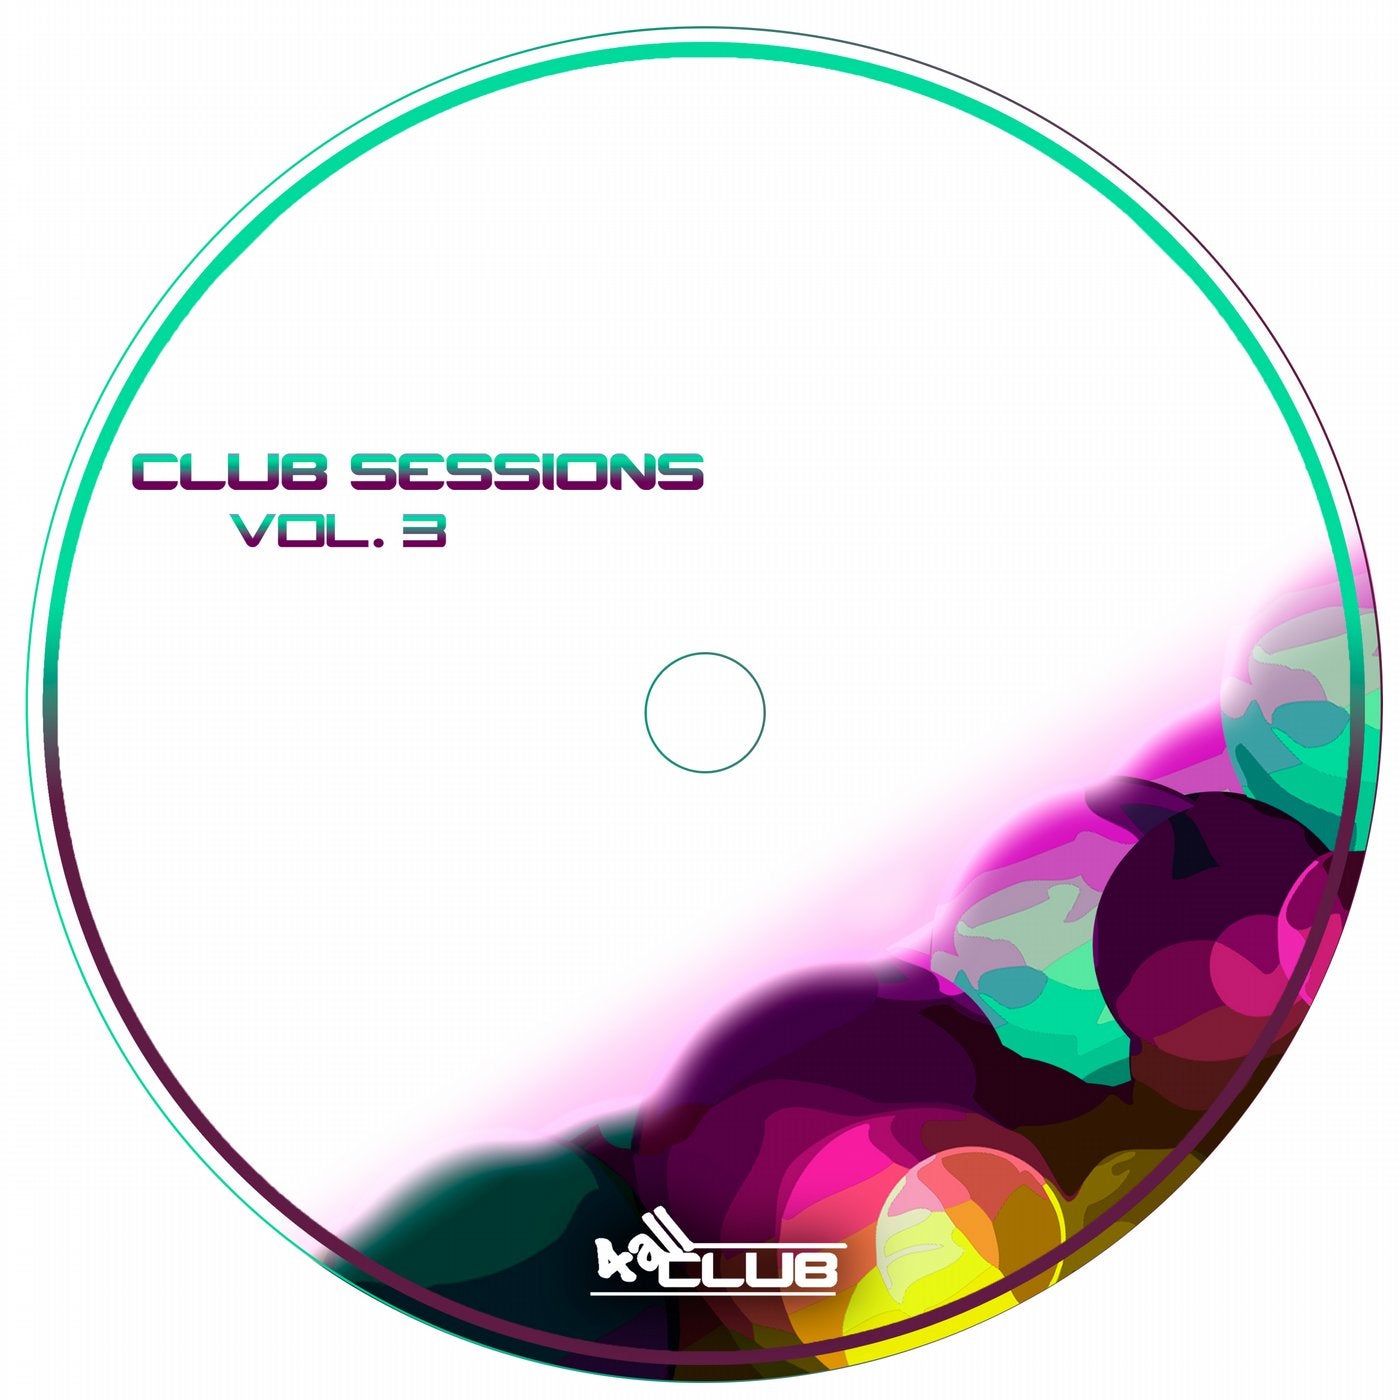 Club Sessions Vol. 3